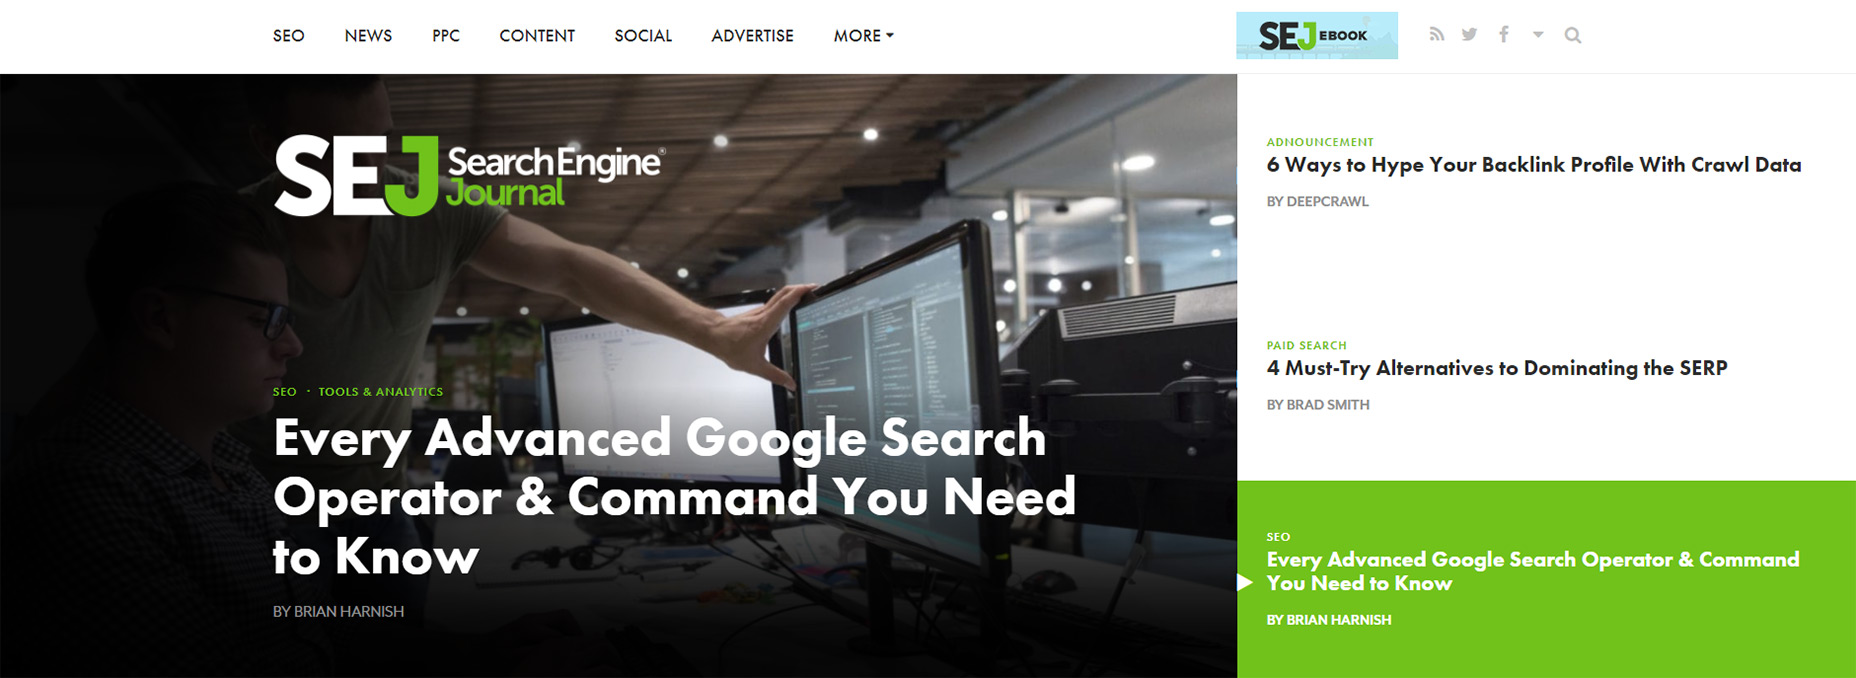 04-search-engine-journal-featured-widget